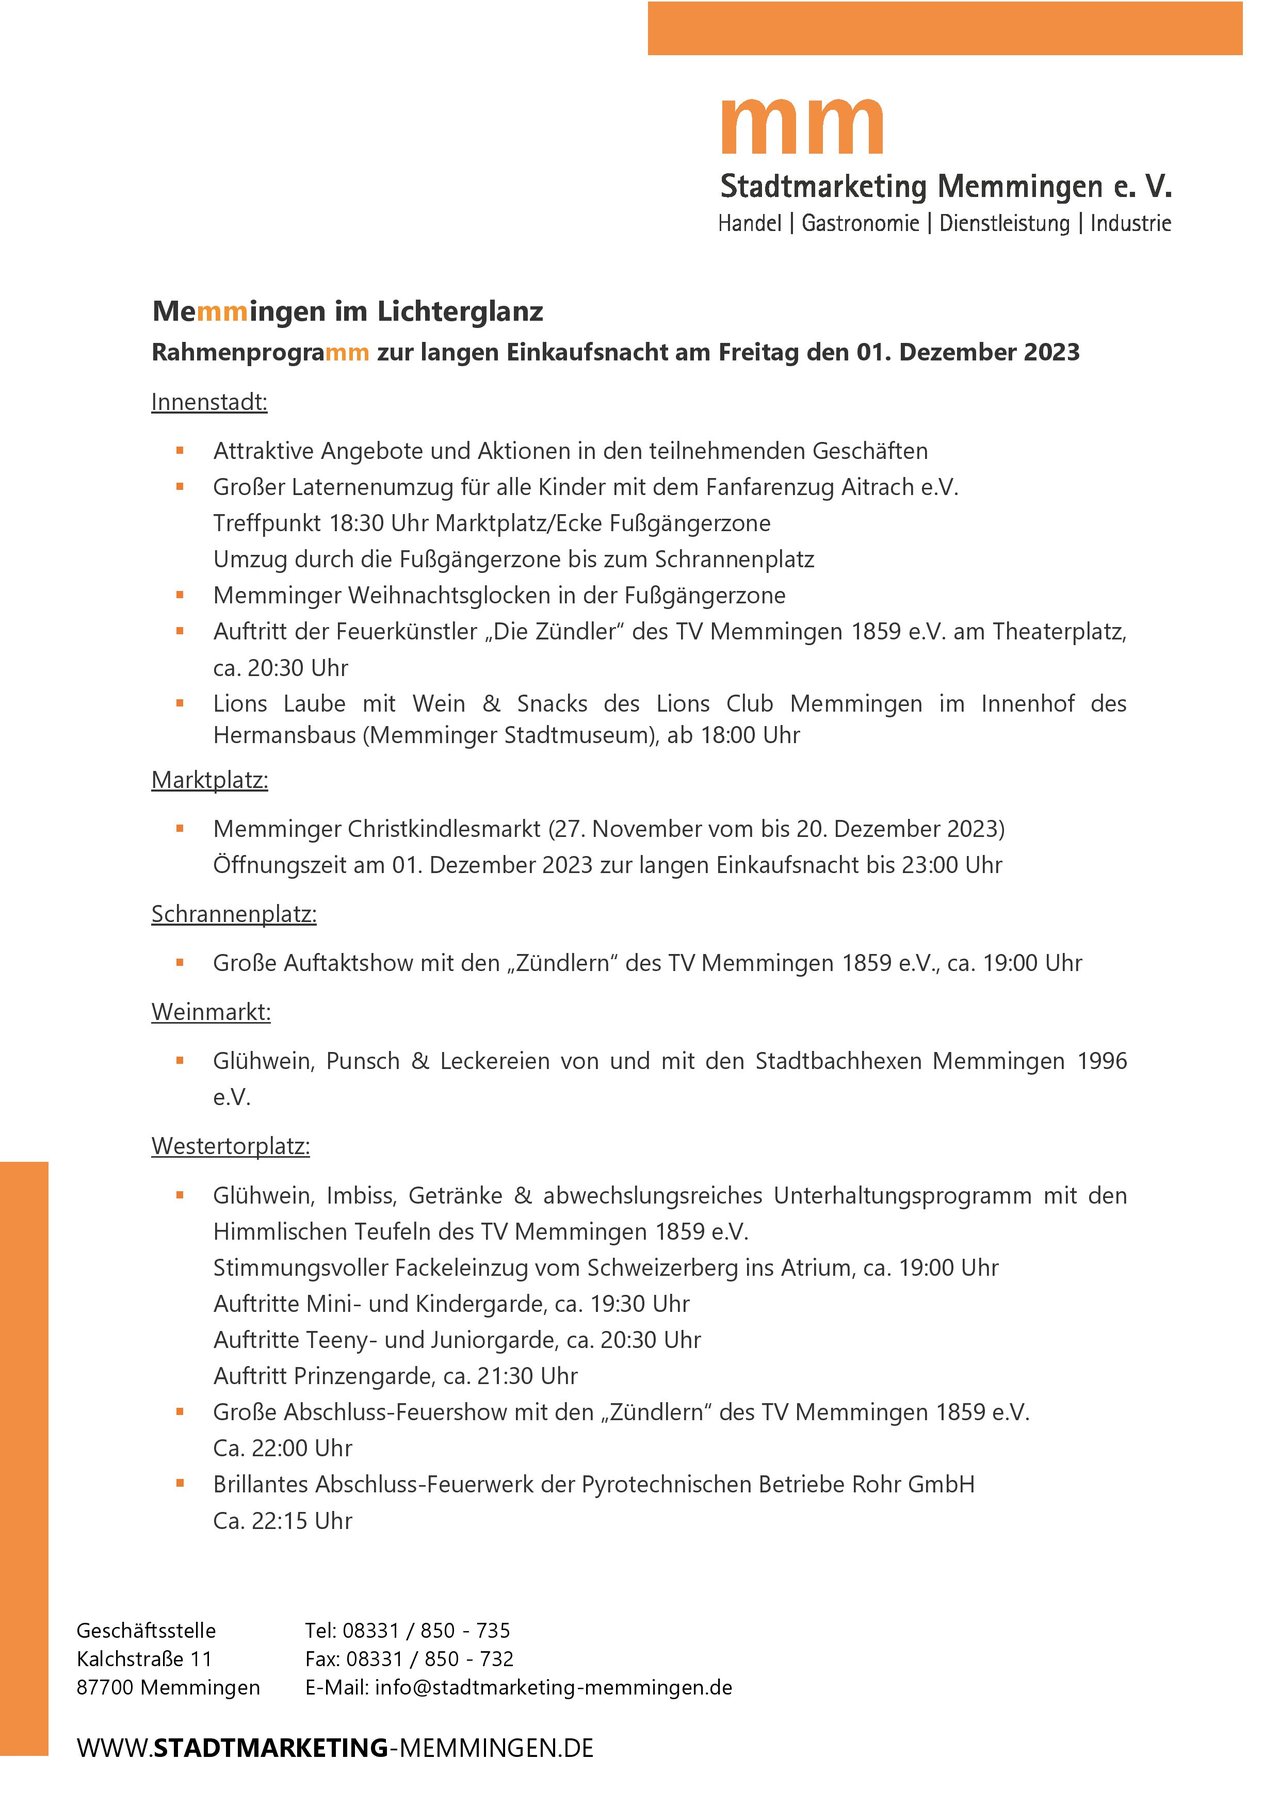 20231201_Pressemitteilung Stadtmarketing Memmingen e.V._Memmingen im Lichterglanz Rahmenprogramm_1